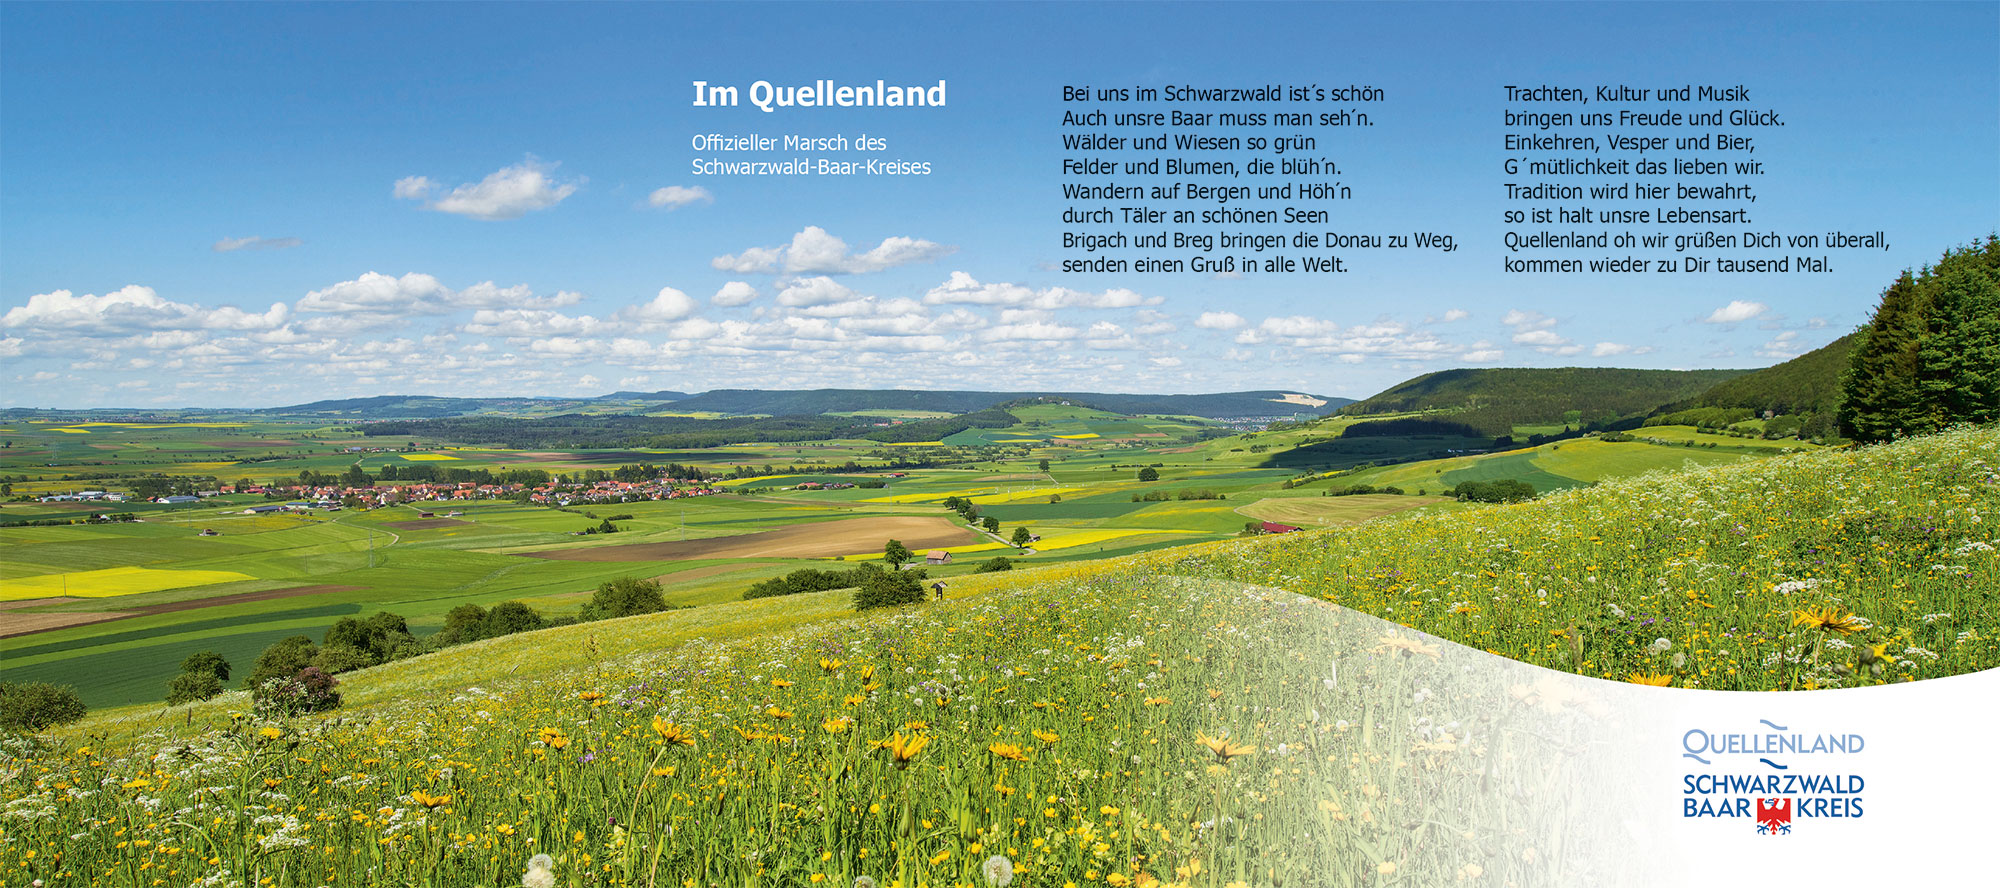 Coverbild "Im Quellenland - offizieller Marsch des Schwarzwald-Baar-Kreises". Zu sehen ist eine blhende Frhlingslandschaft auf der Baar. Grne Wiesen voller Lwenzahnblhten, sowie Drfer in der Ferne prgen die idyllische Landschaft.